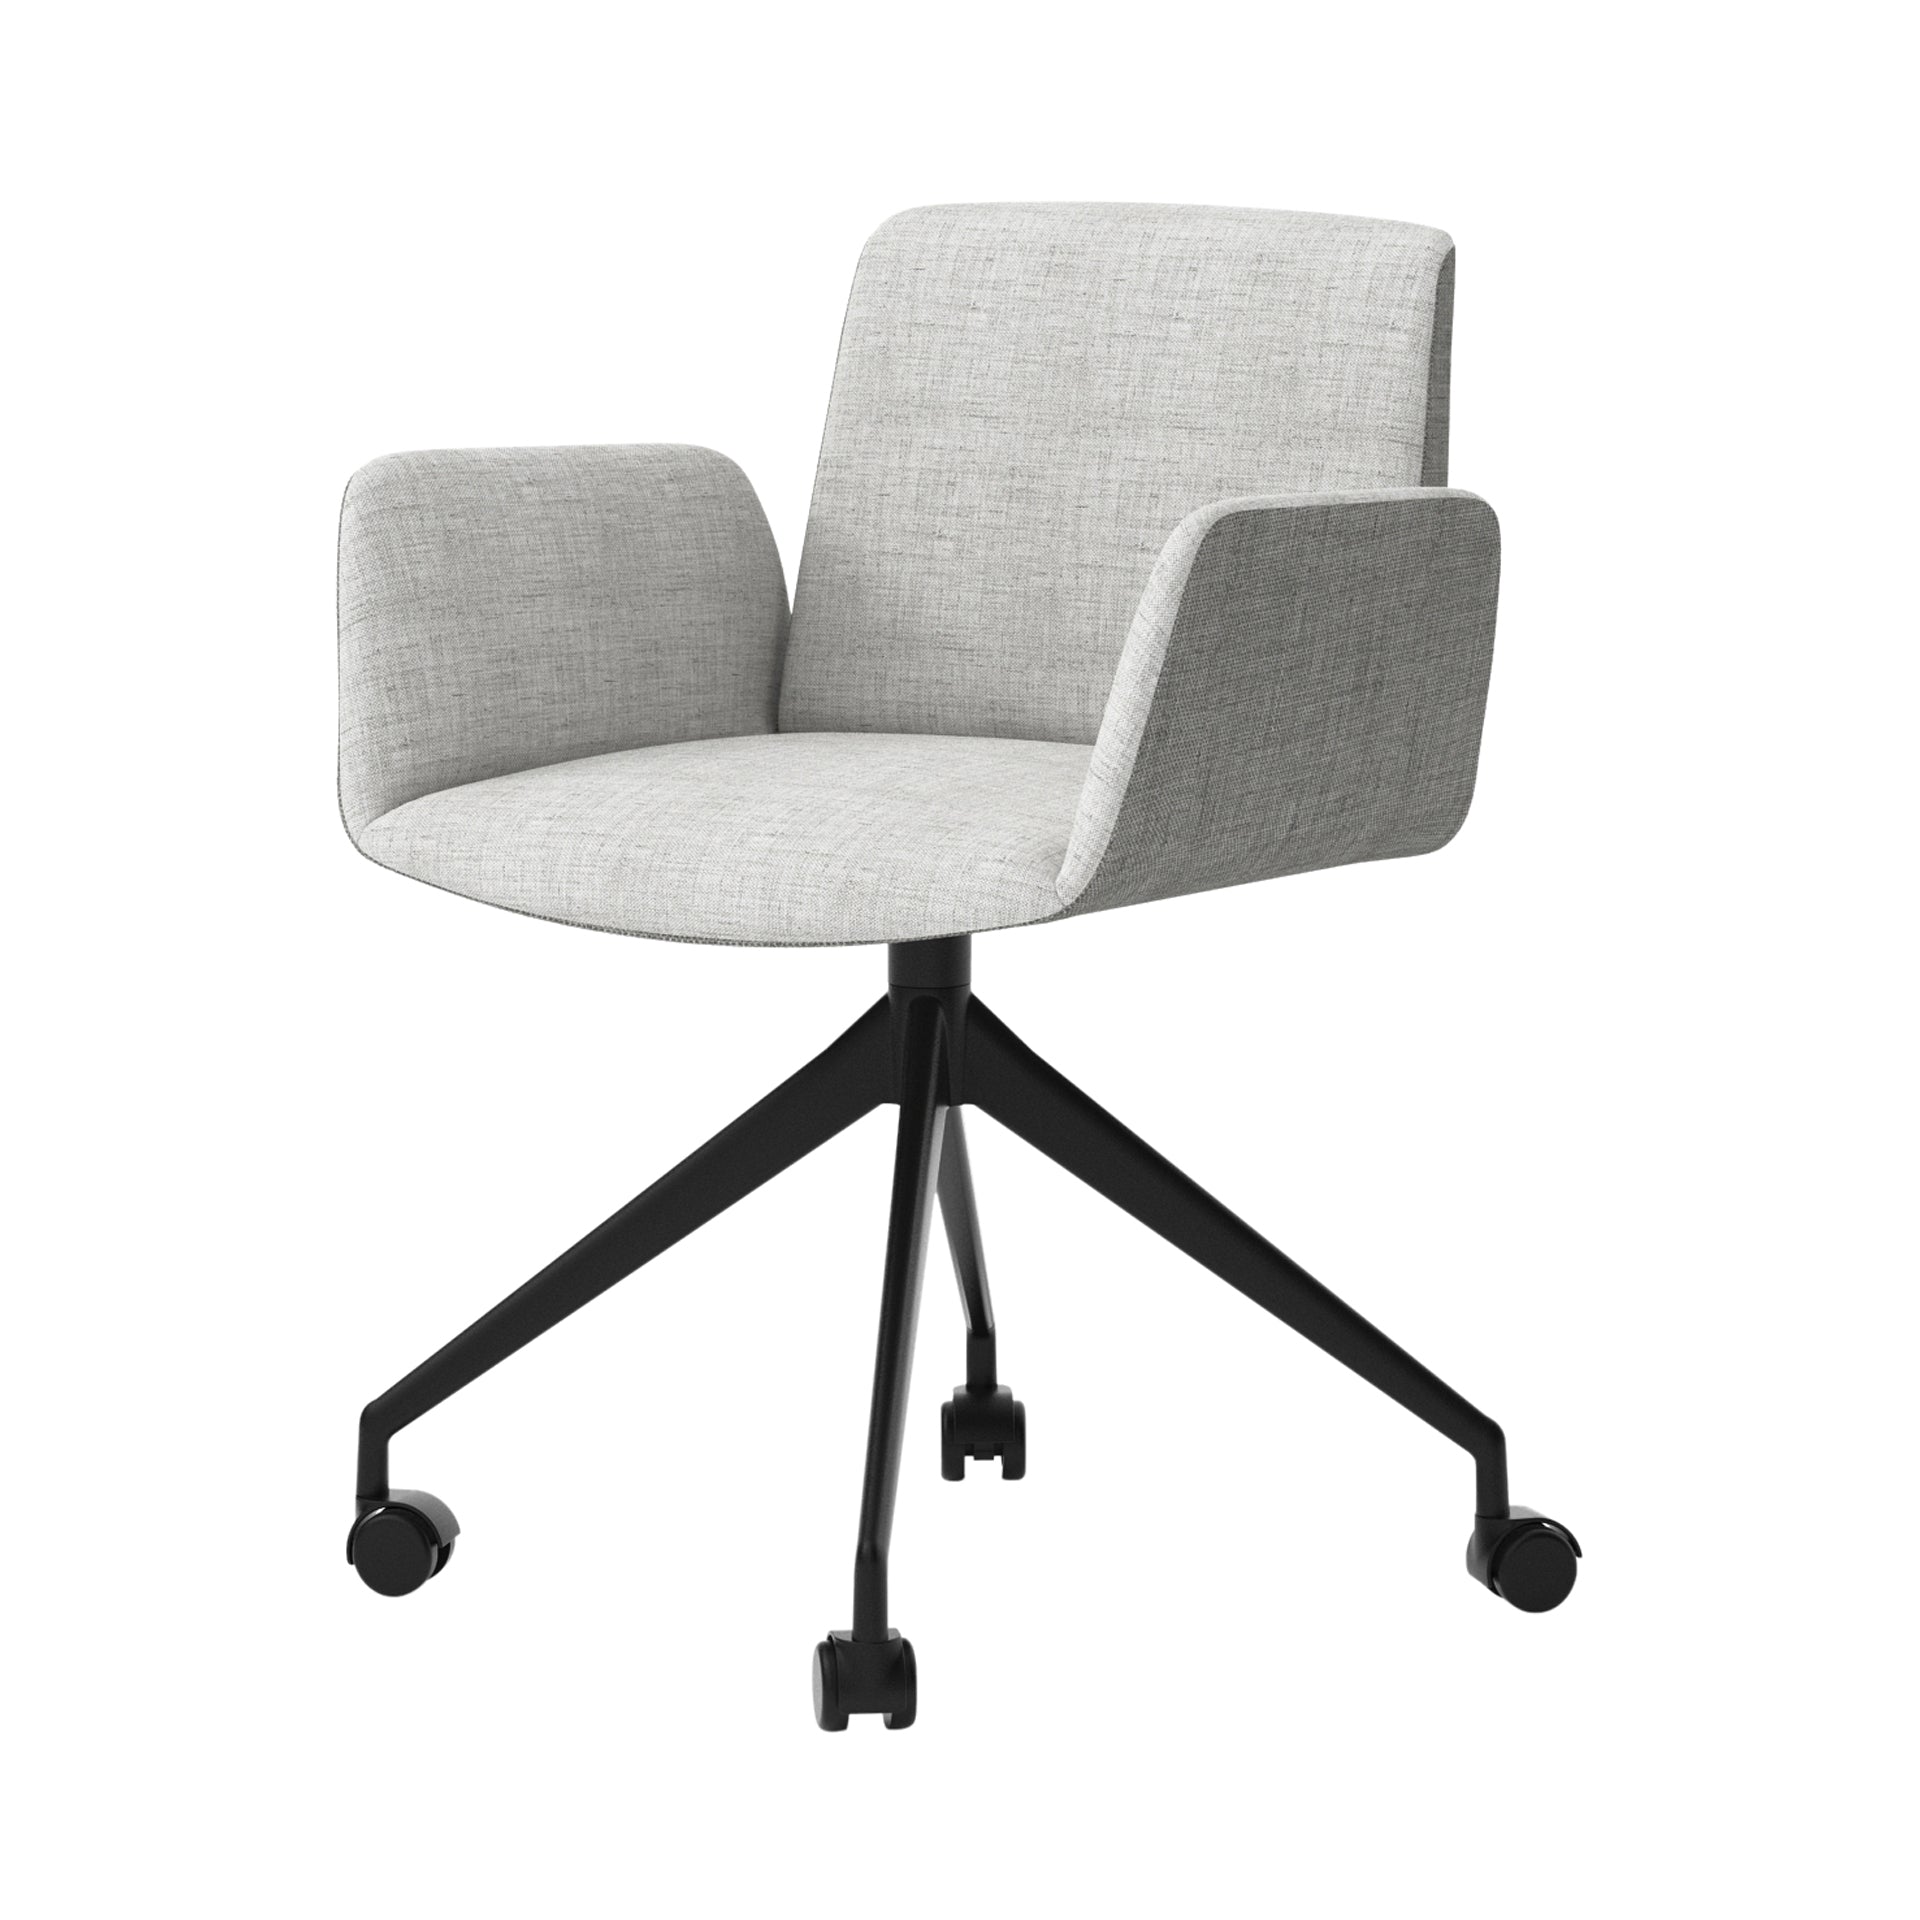 Hug 4 Star Swivel Base Chair: Fully Upholstered + Caster + Black